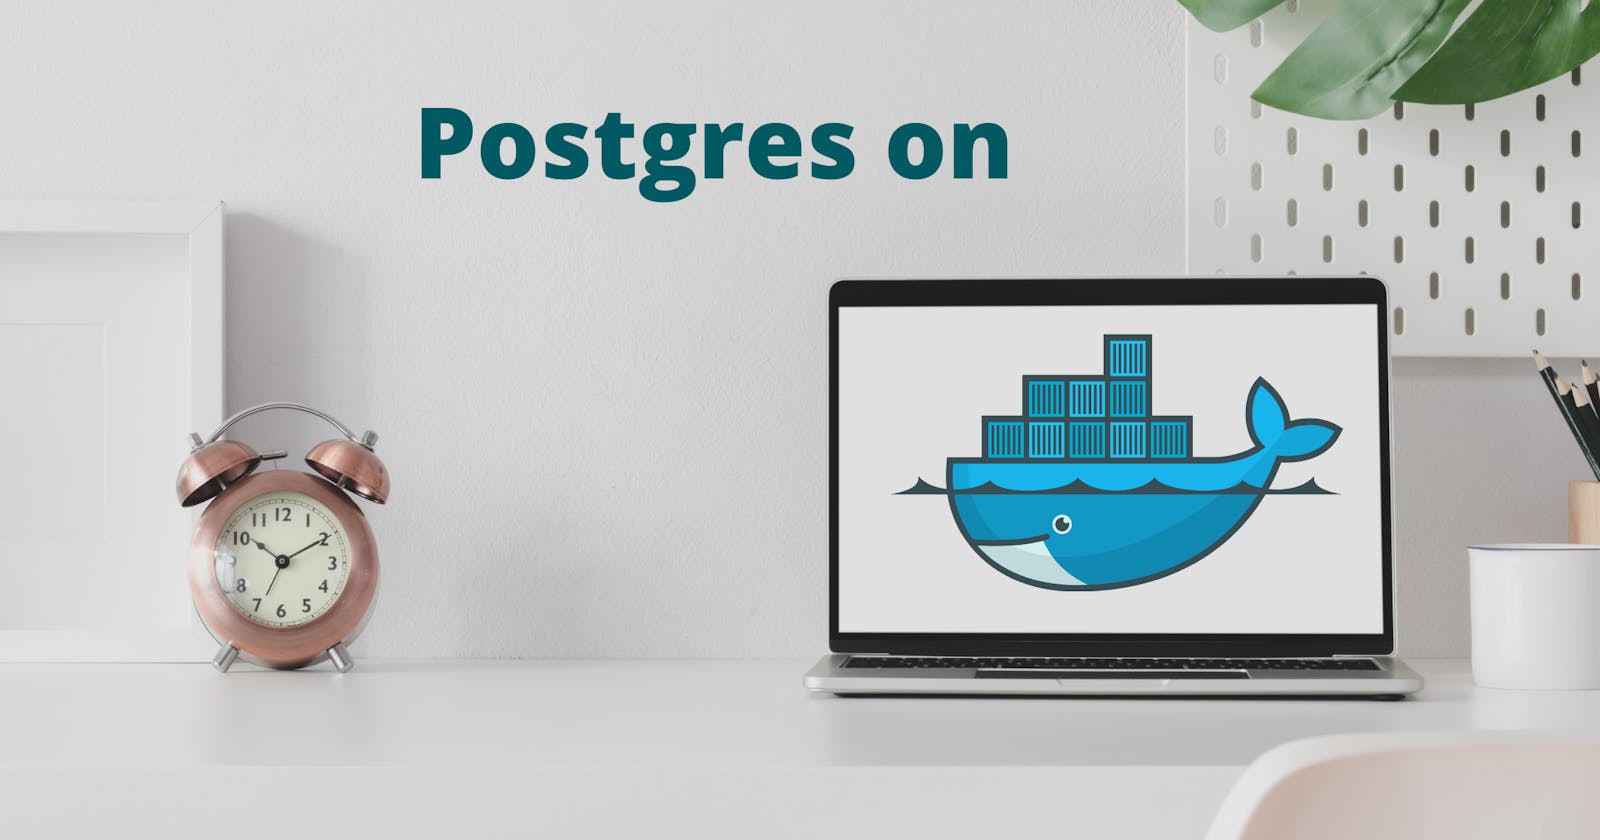 Developer setup for PostgreSQL on Docker